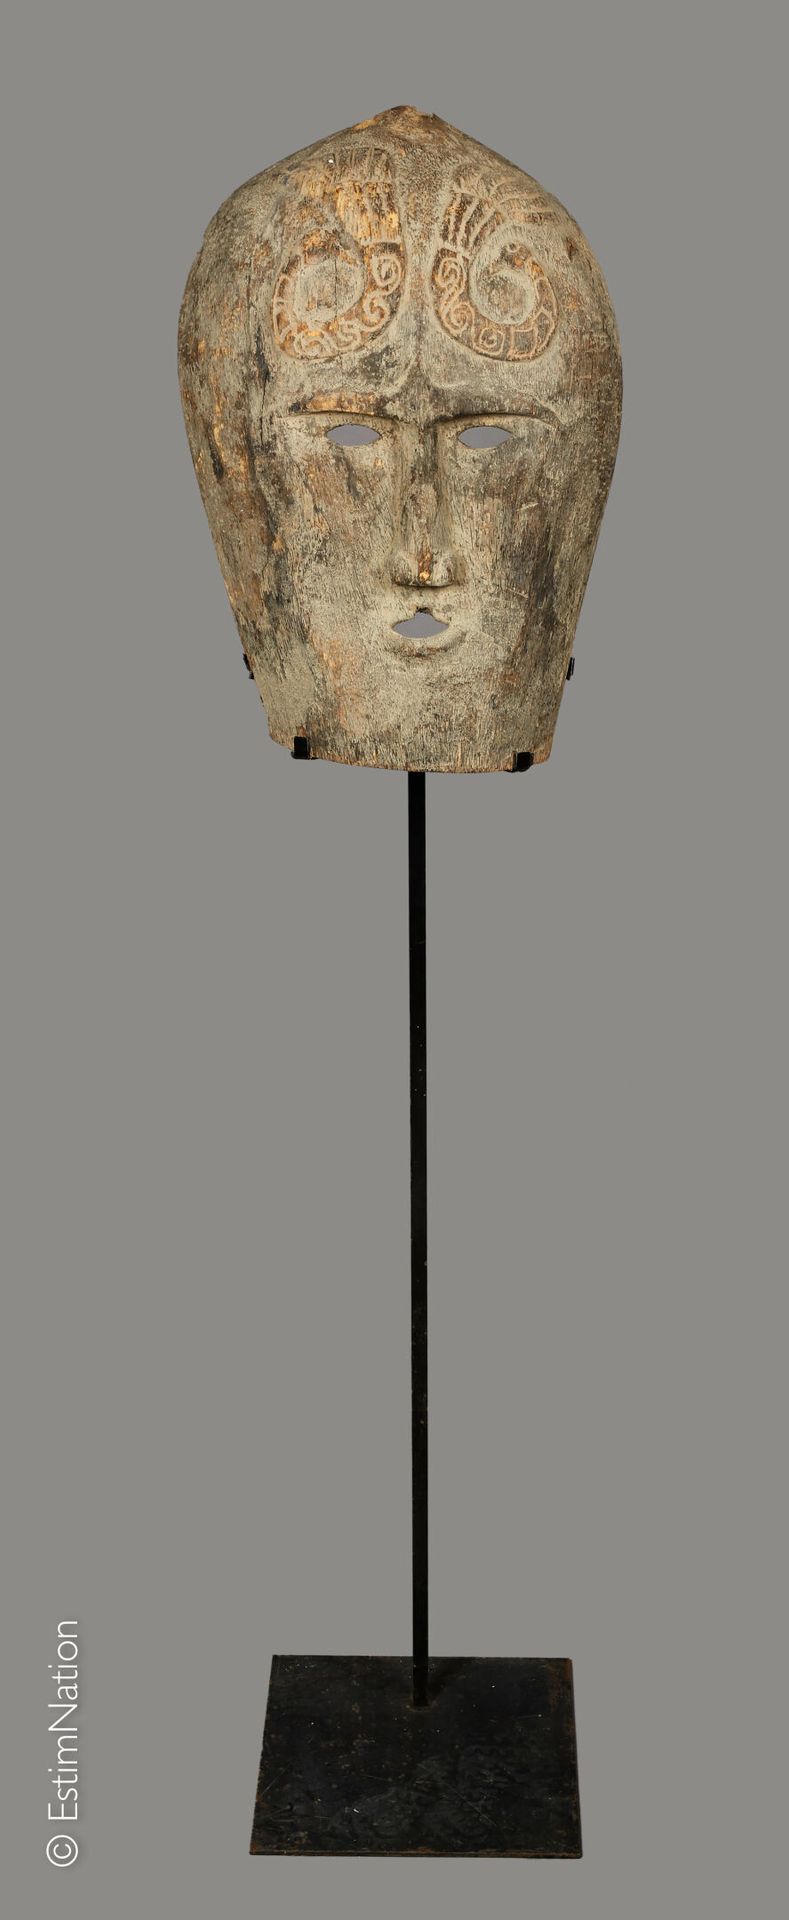 TIMOR TIMOR



Máscara antropomorfa de madera tallada con decoración grabada de &hellip;